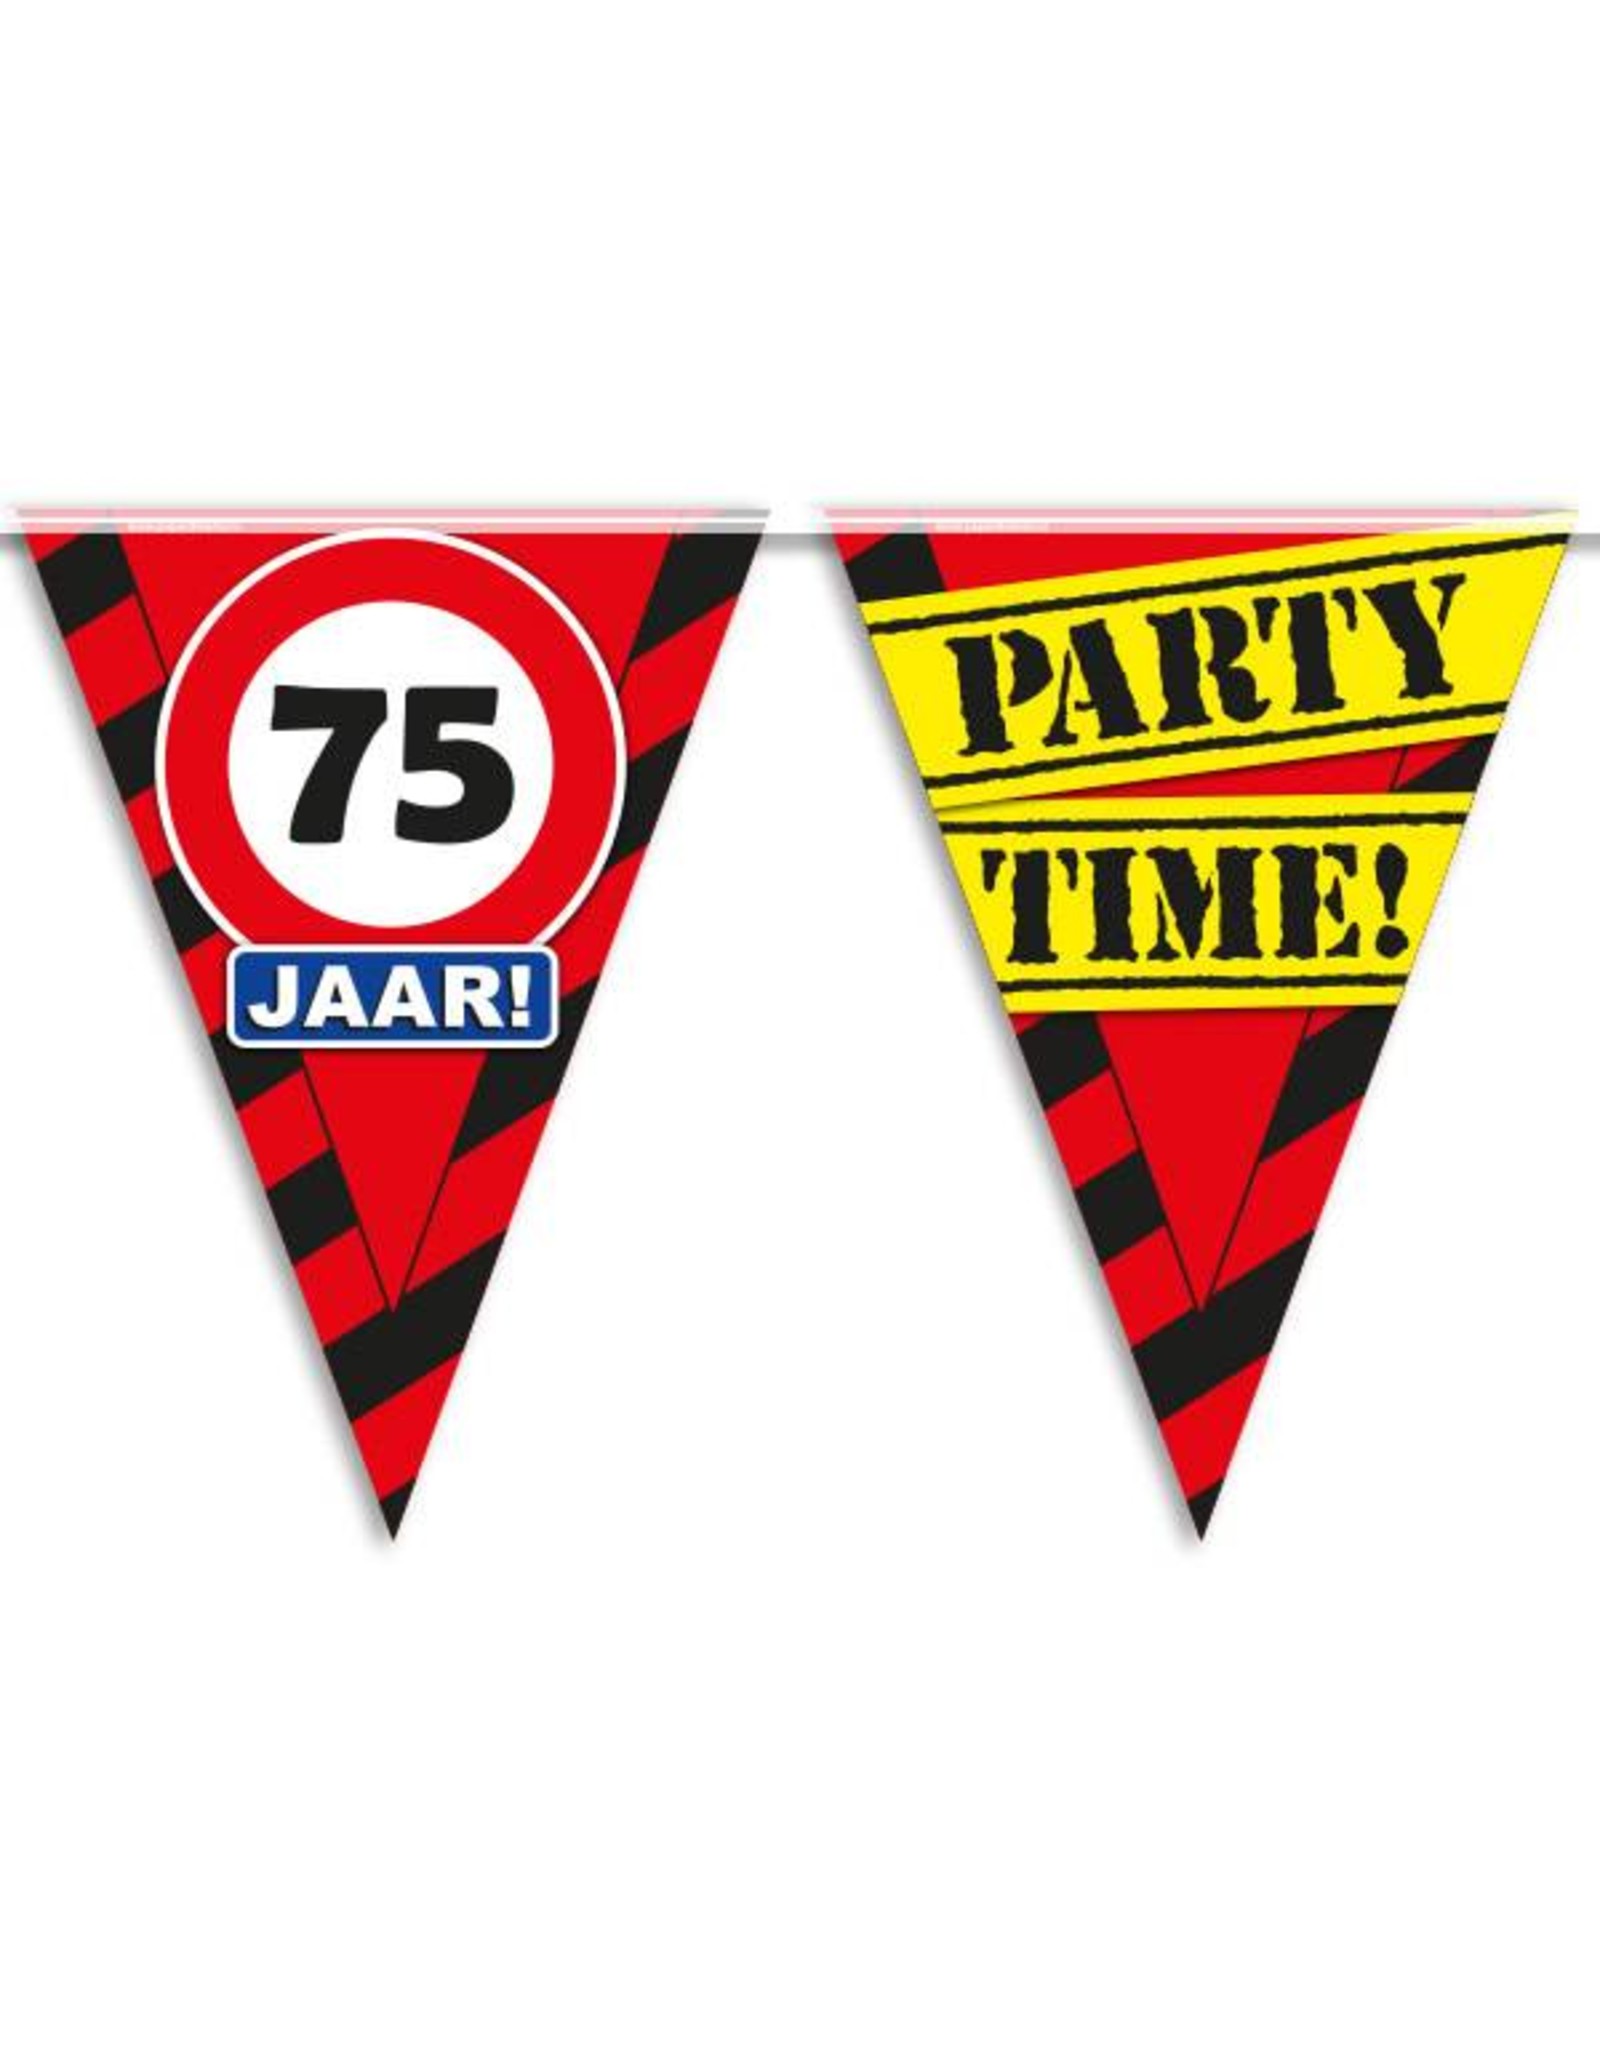 Party Vlaggen - 75 jaar